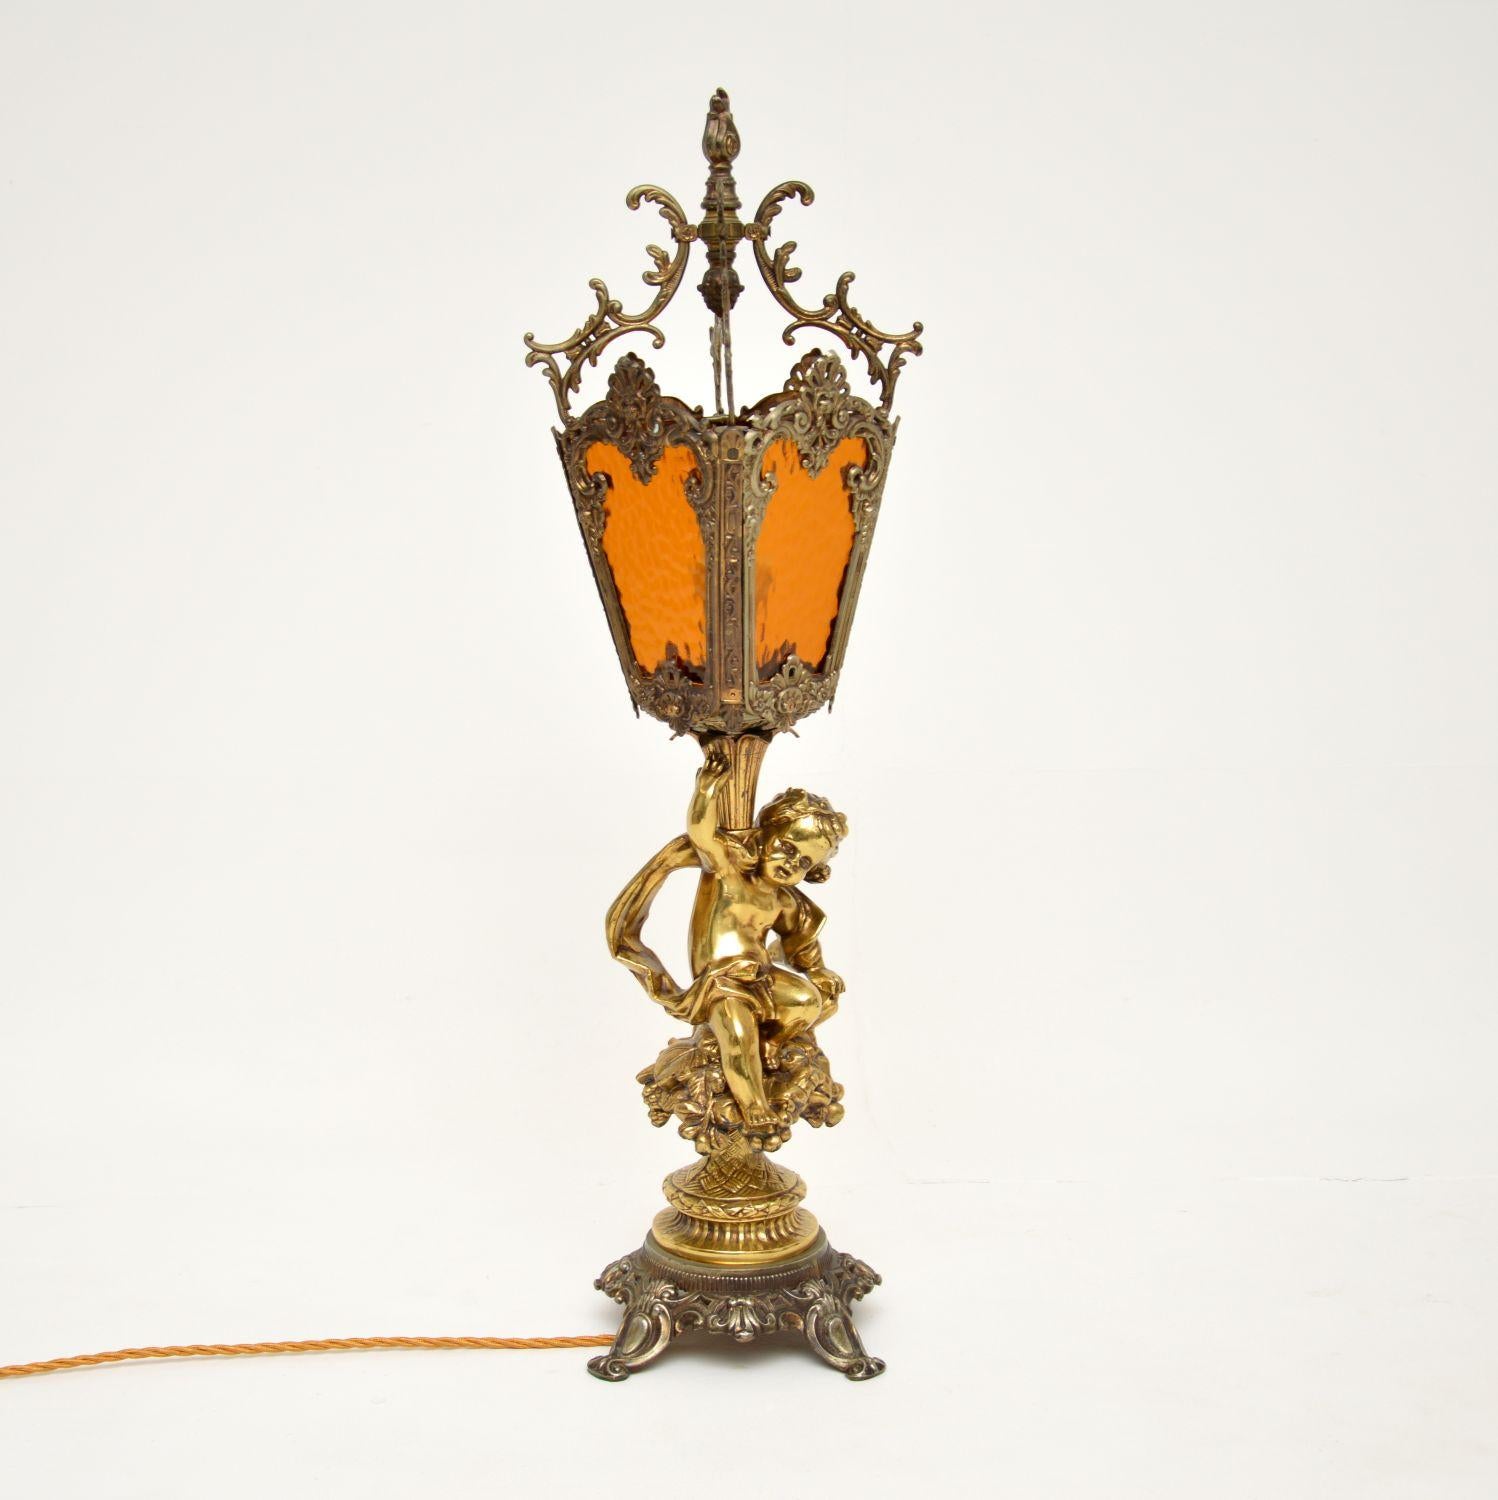 Une grande et étonnante lampe de table ancienne en métal doré et laiton, avec des inserts originaux en verre texturé. Nous pensons qu'il est français et qu'il date d'environ les années 1930-50.

Il est d'une qualité absolument merveilleuse, avec